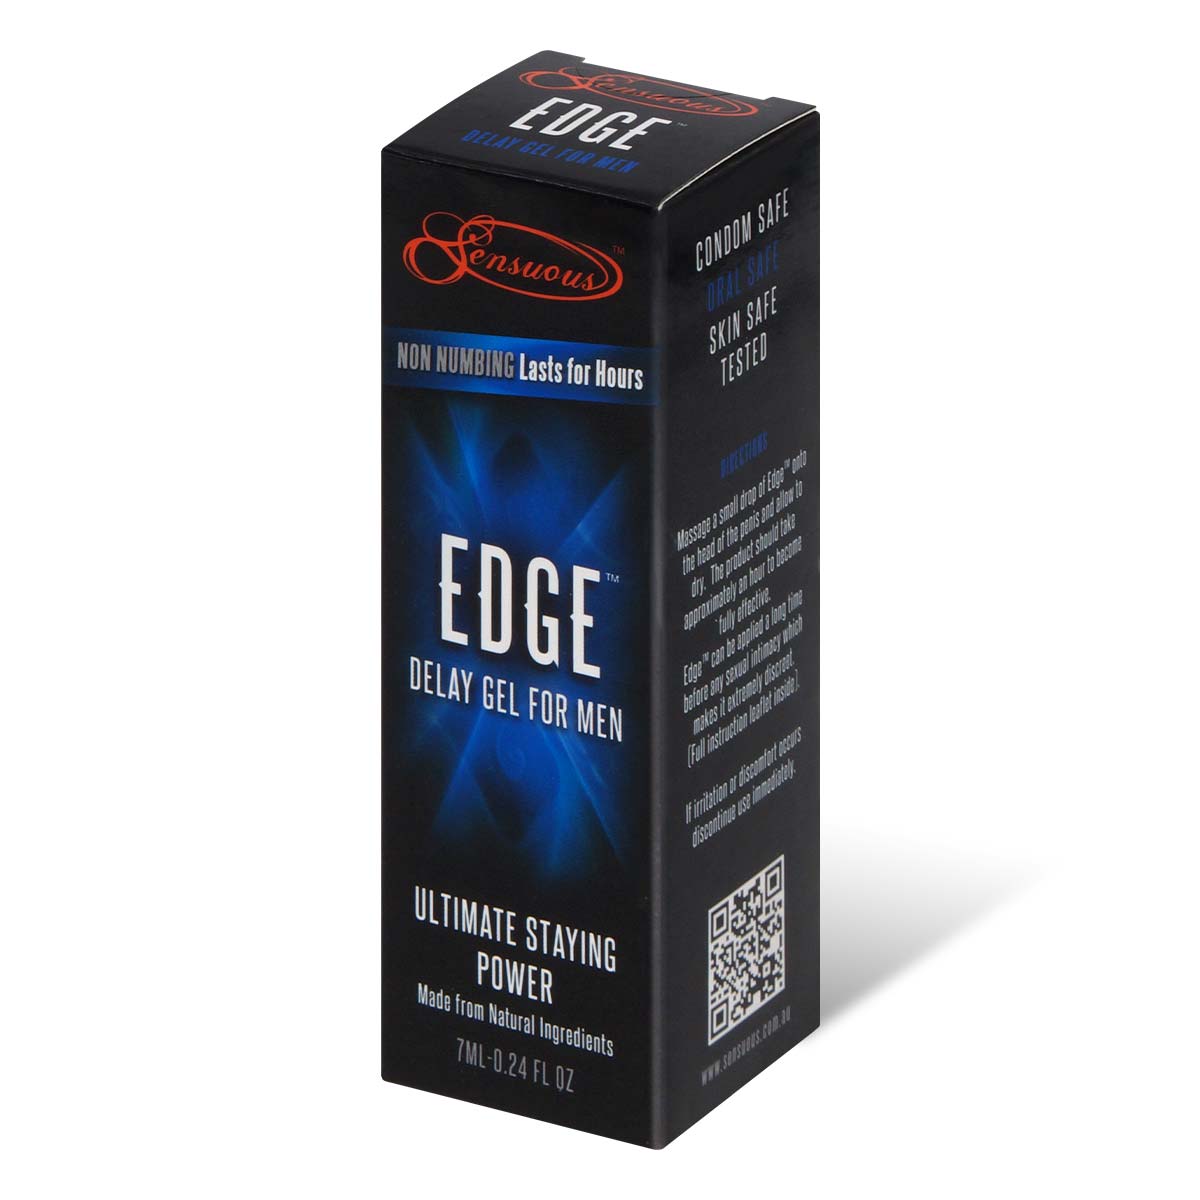 Sensuous Edge delay gel for men 7ml-thumb_1